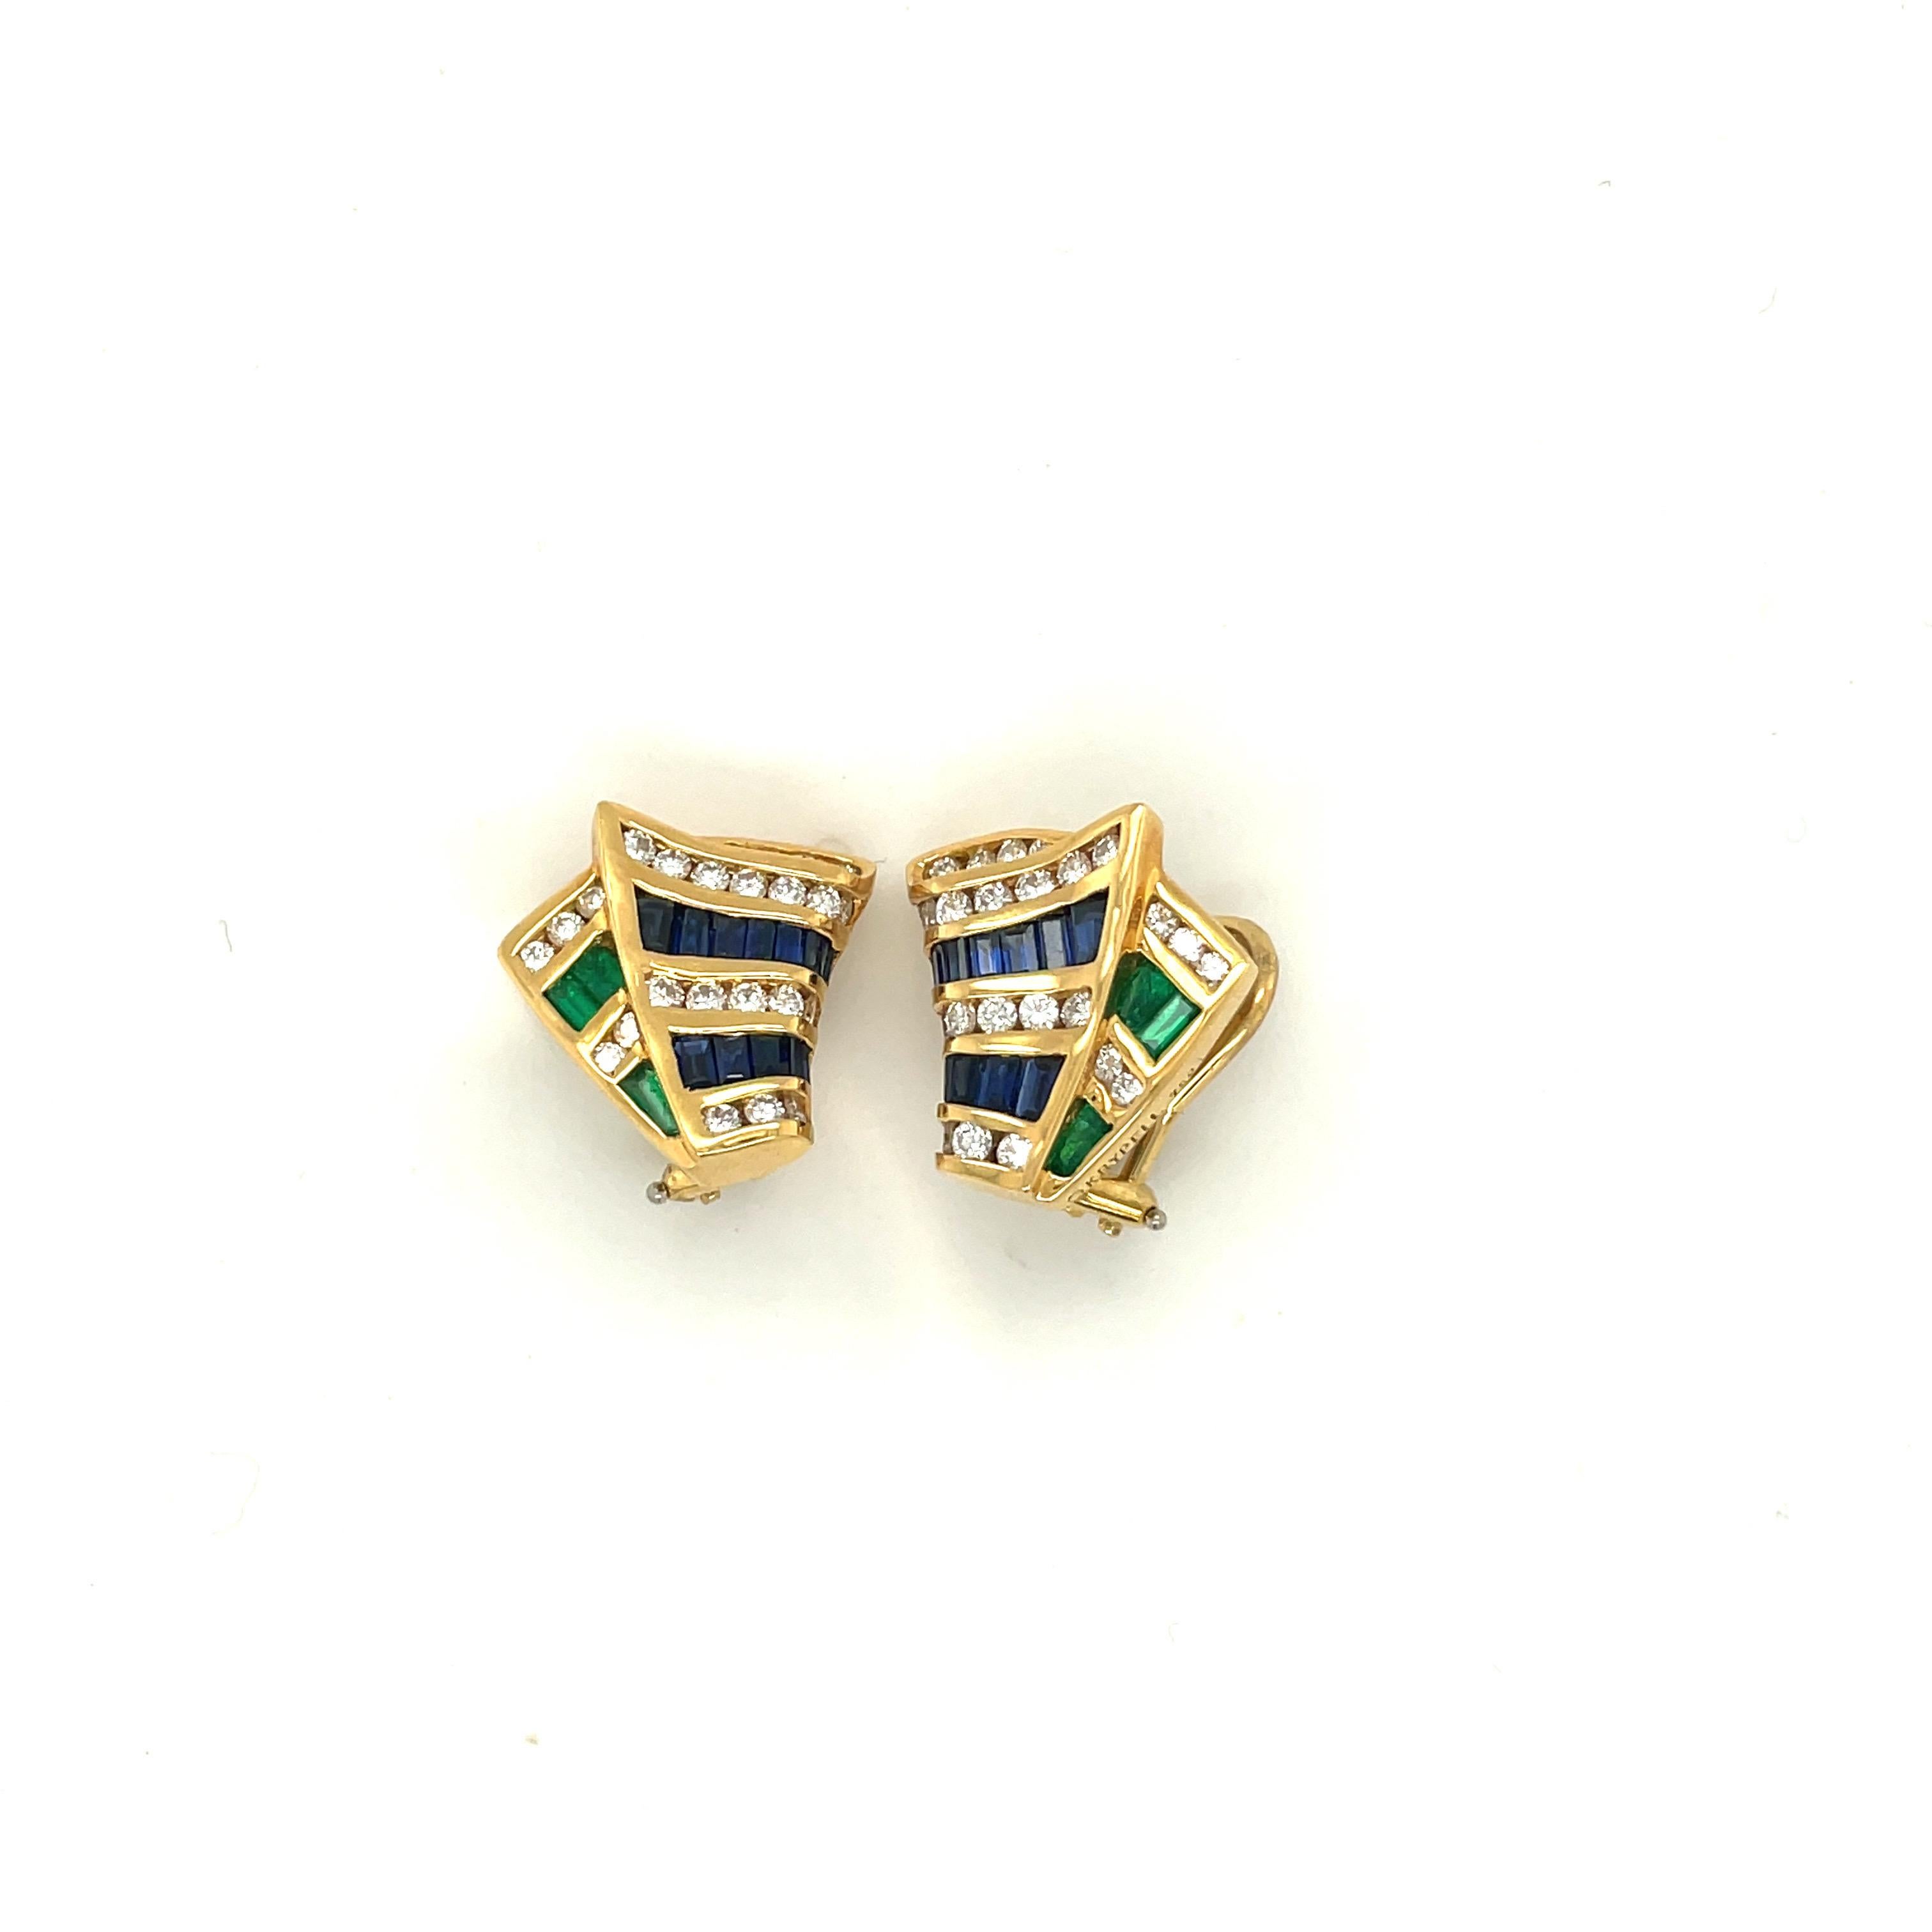 Charles Krypell Jewelry est une marque de joaillerie fine basée à New York qui est devenue internationalement connue pour son utilisation exquise de la couleur, ses conceptions originales et son savoir-faire exceptionnel. 
Montées en or jaune 18